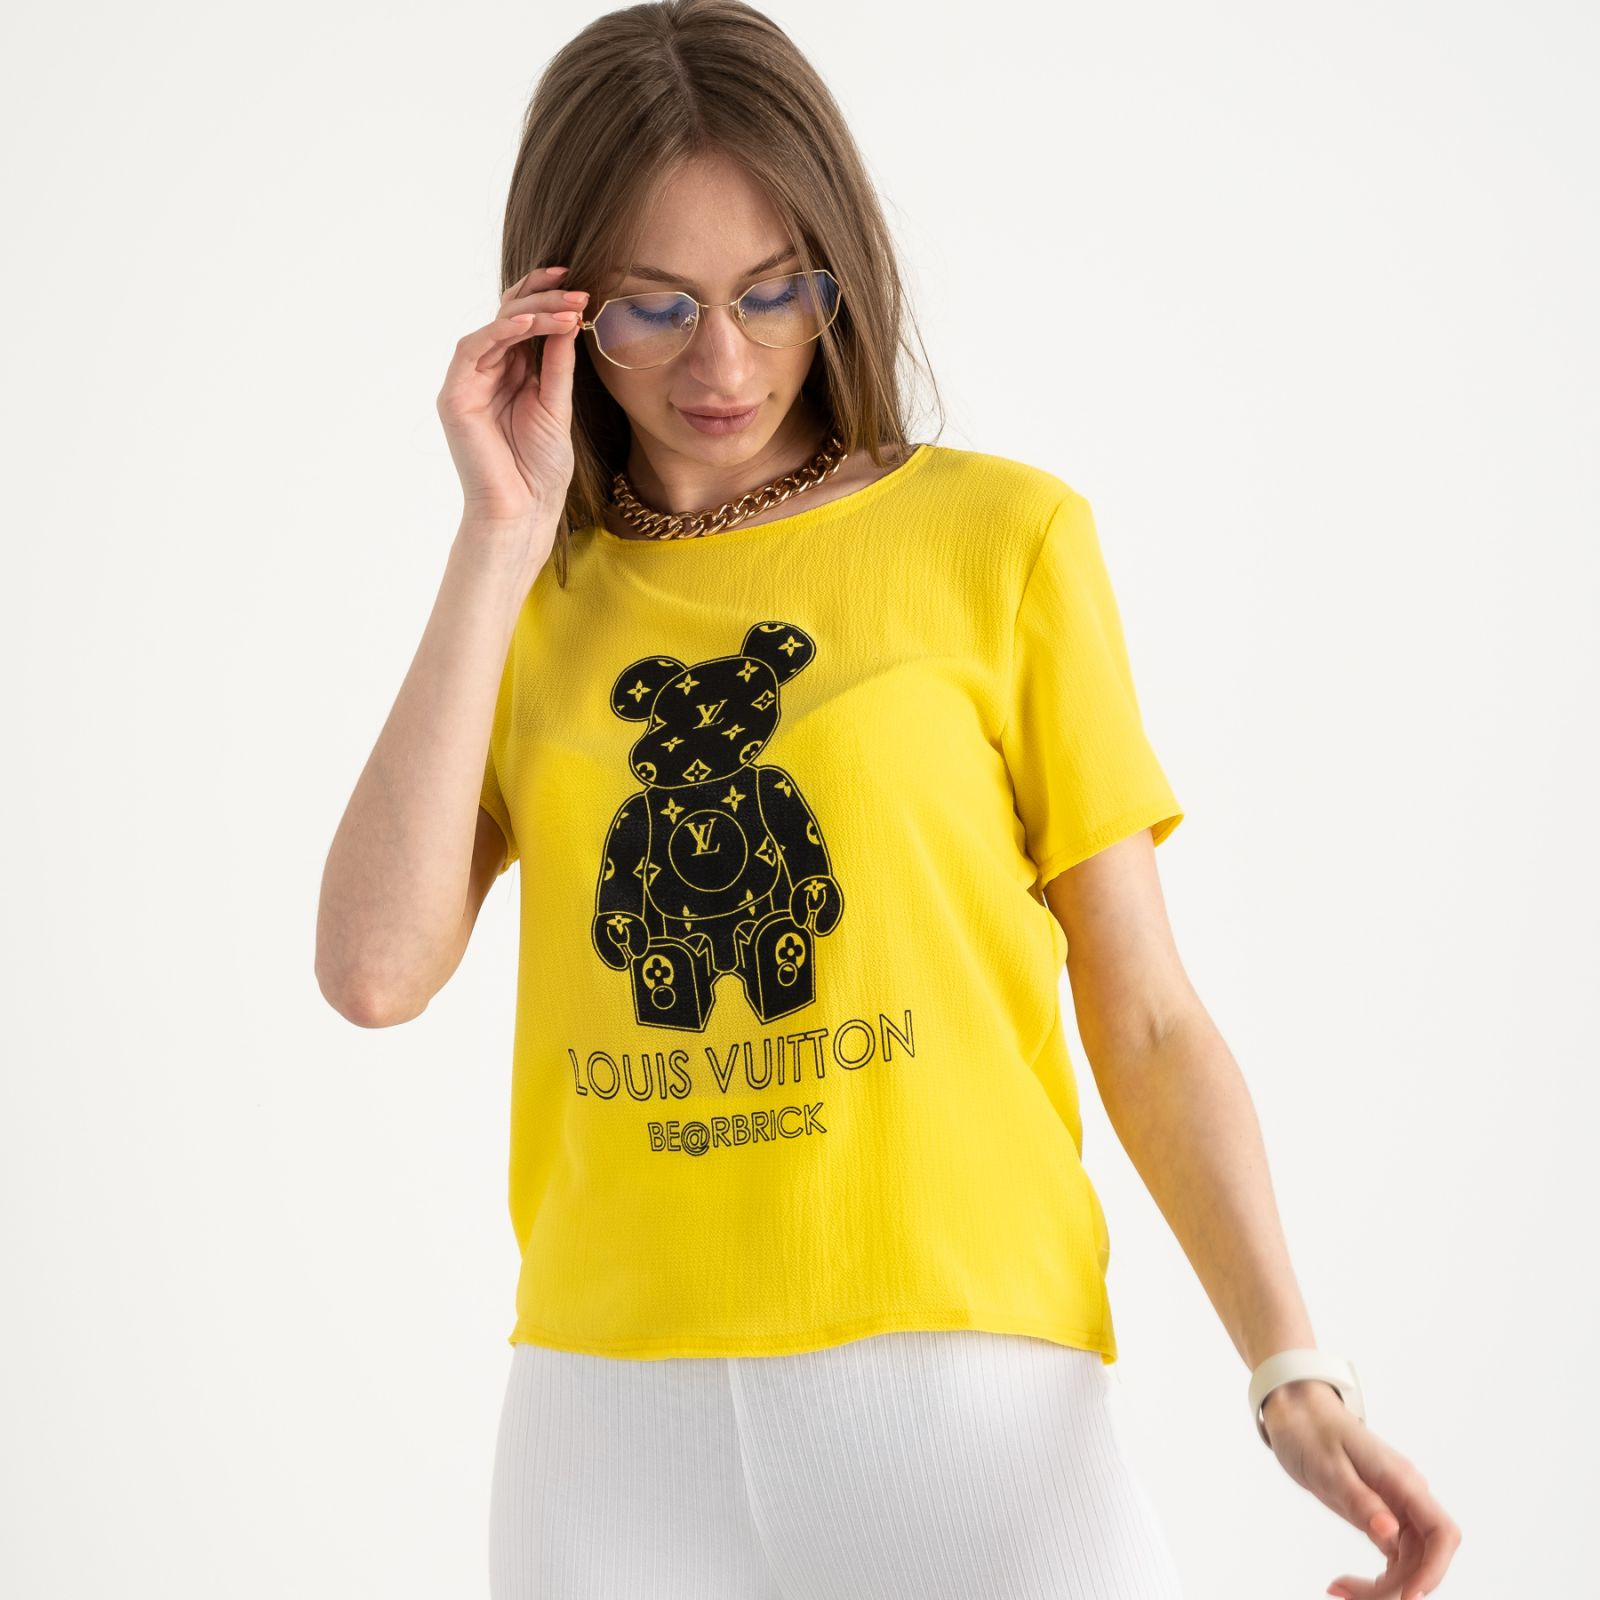 2021-6 футболка желтая женская с принтом (5 ед. размеры: 42.44.46.48.50)  